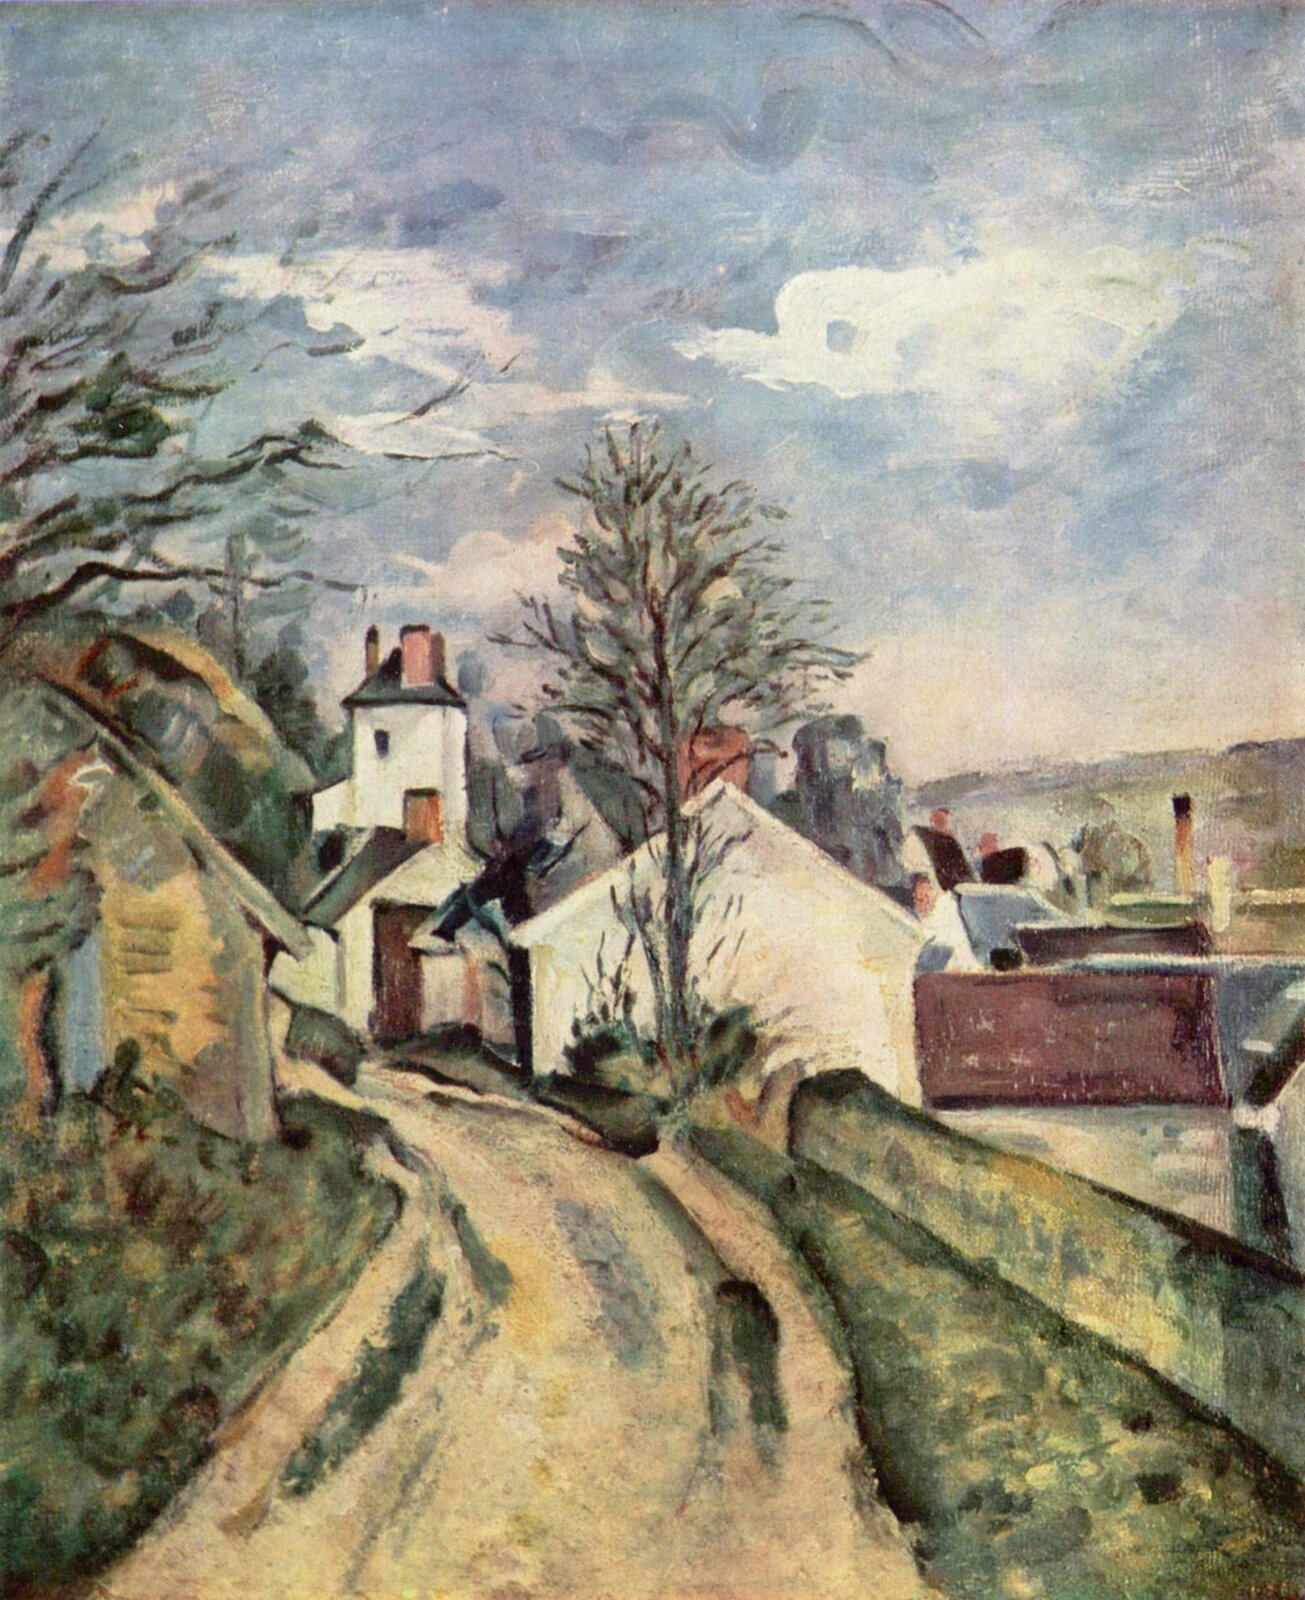 Ilustracja o kształcie pionowego prostokąta przedstawia obraz „Dom doktora Gacheta w Auvers-sur-Oise” Paula Cézanne’a. Ukazuje pejzaż z zabudowaniami. W centrum obrazu znajduje się lekko skręcająca w lewo droga, obok której rośnie trawa. Przy drodze znajdują się budynki w jasnym kolorze oraz drzewa. Po prawej stronie, w dole widok przedstawia zabudowę miasteczka oraz daleki, pagórkowaty pejzaż. Tło stanowi błękitne niebo.